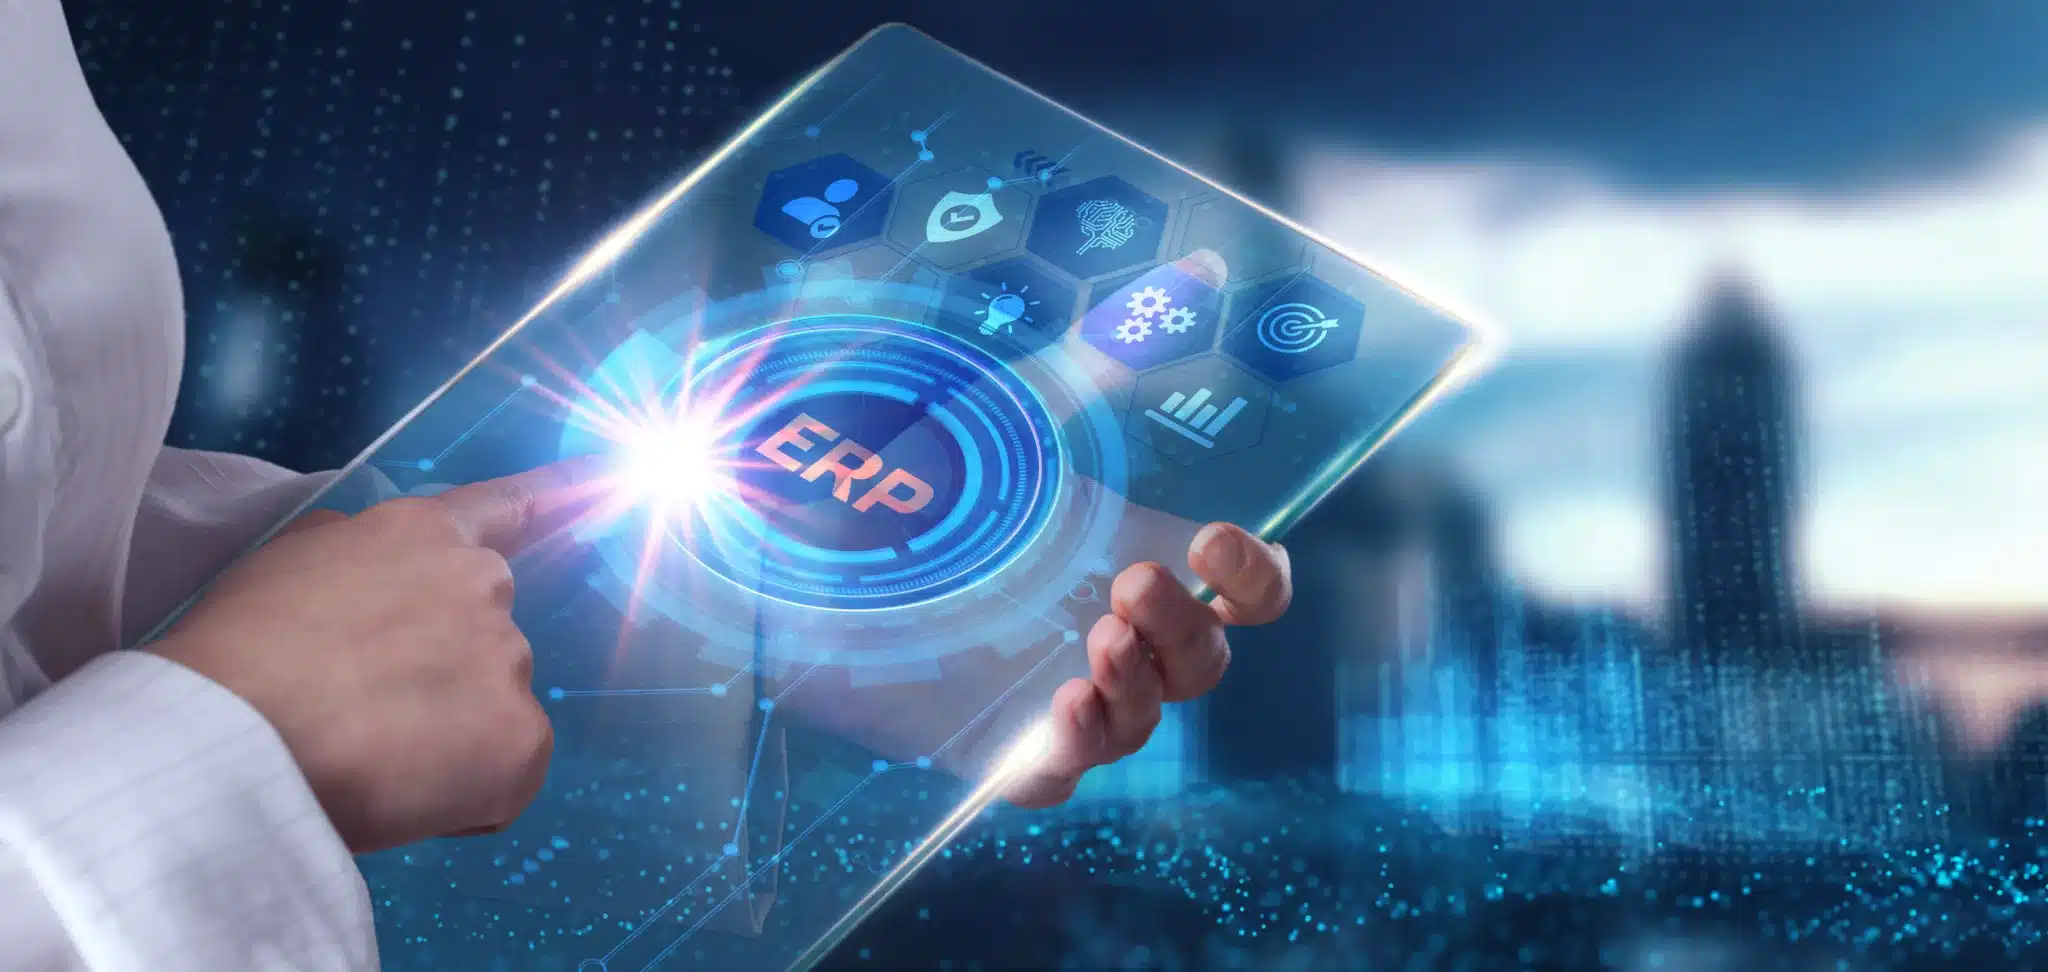 Enterprise Asset Management: An Important Component of ERP